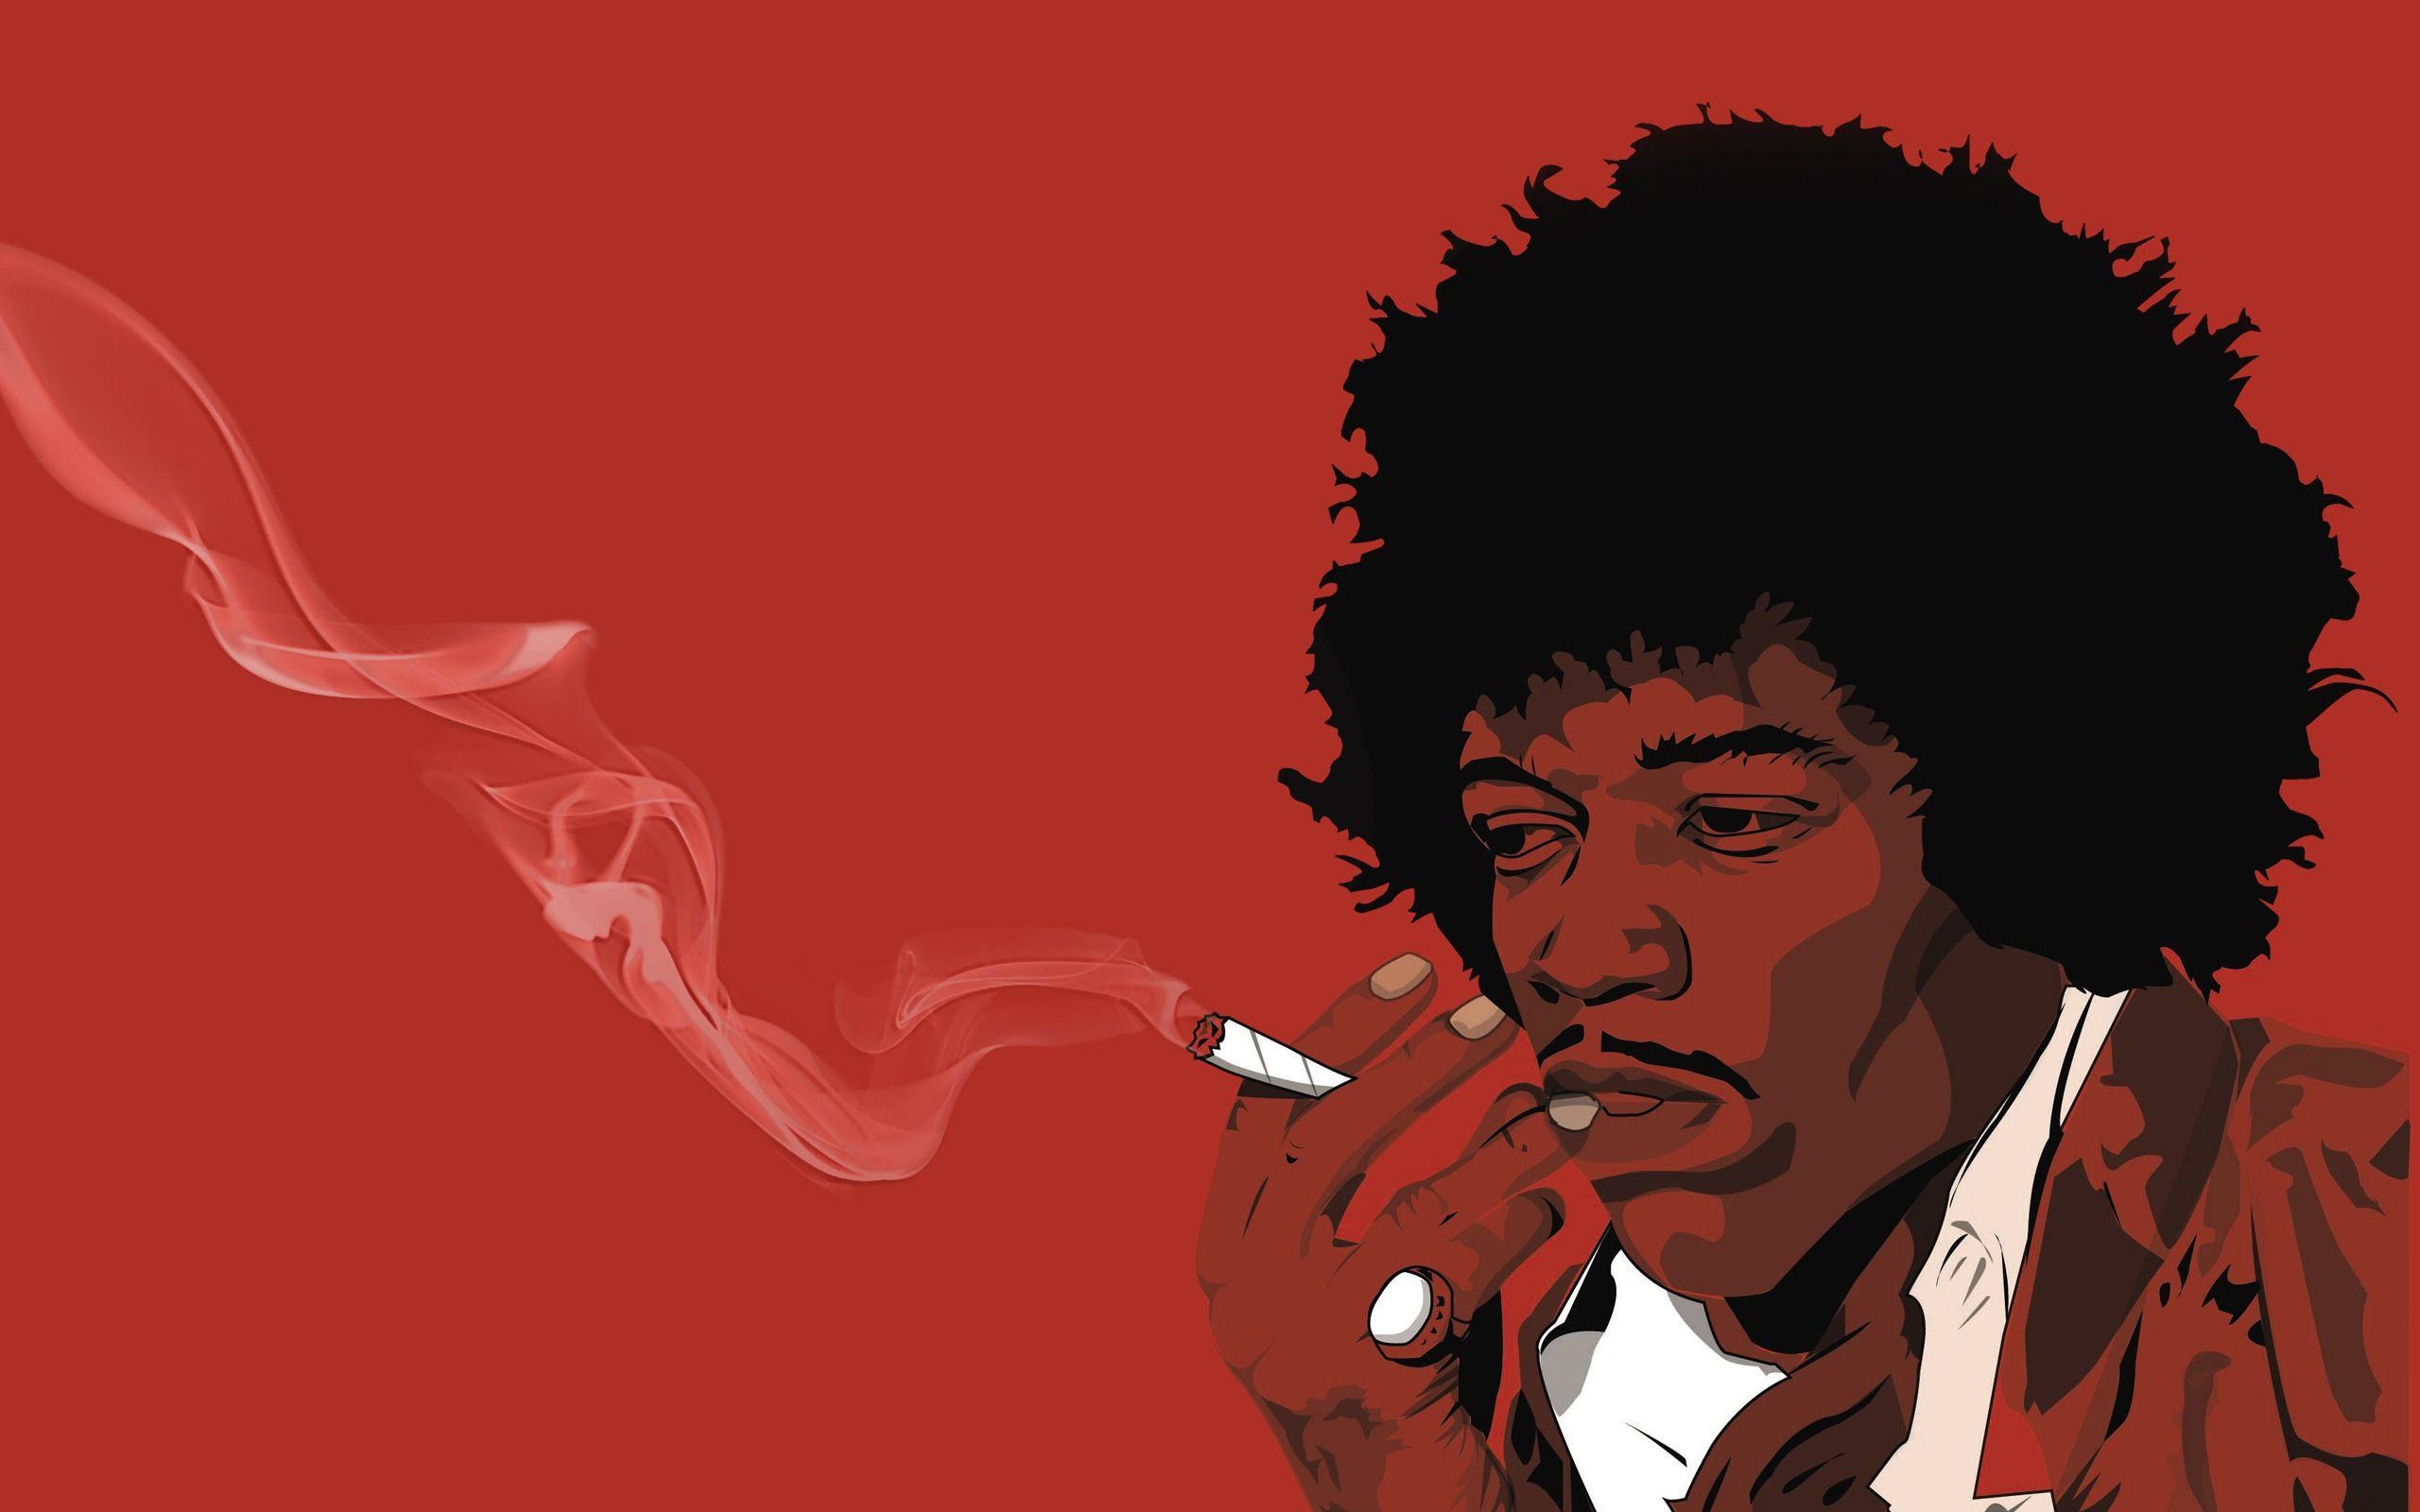 HD Jimi Hendrix Wallpaper